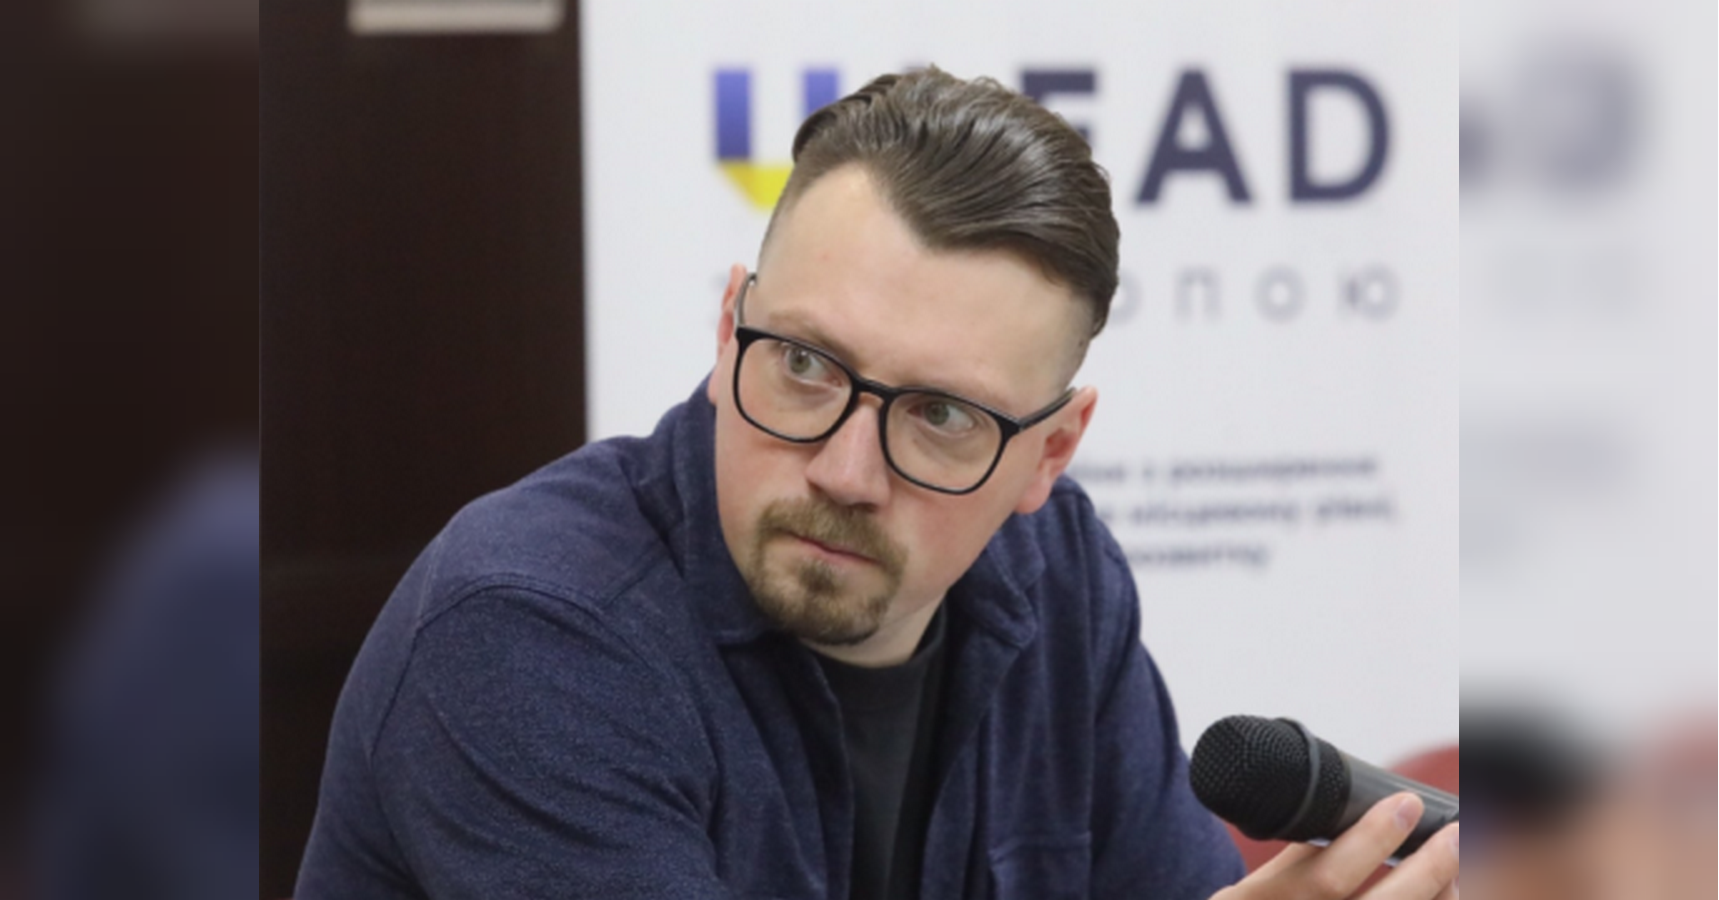 Нардеп Безгін став фігурантом кримінальної справи за посягання на територіальну цілісність України, — ЗМІ